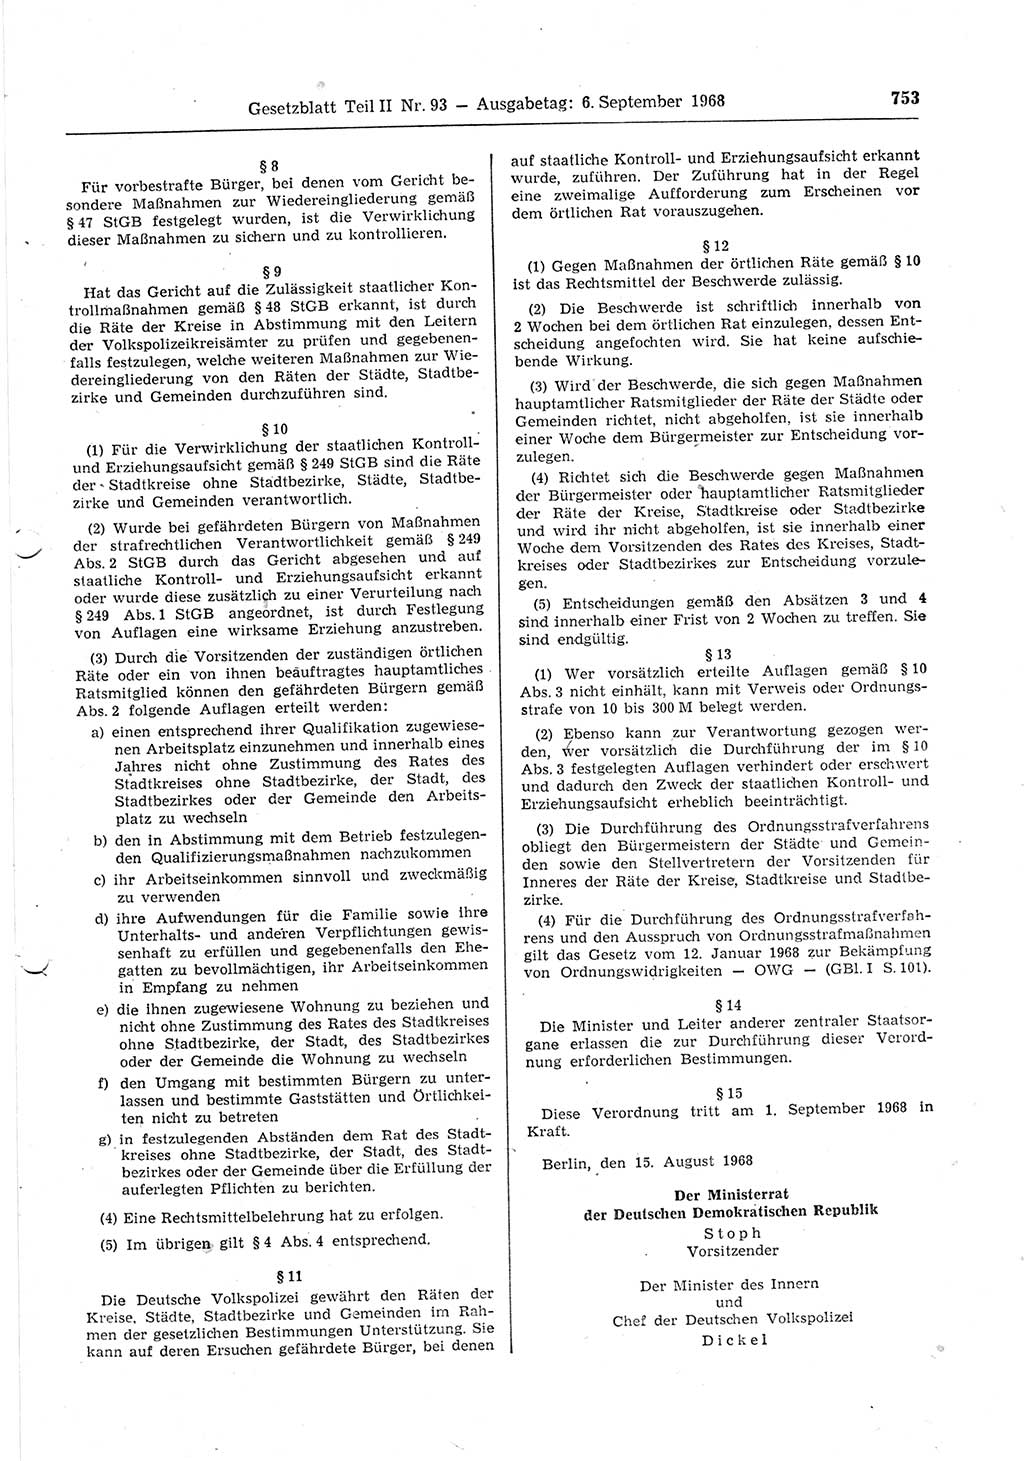 Gesetzblatt (GBl.) der Deutschen Demokratischen Republik (DDR) Teil ⅠⅠ 1968, Seite 753 (GBl. DDR ⅠⅠ 1968, S. 753)